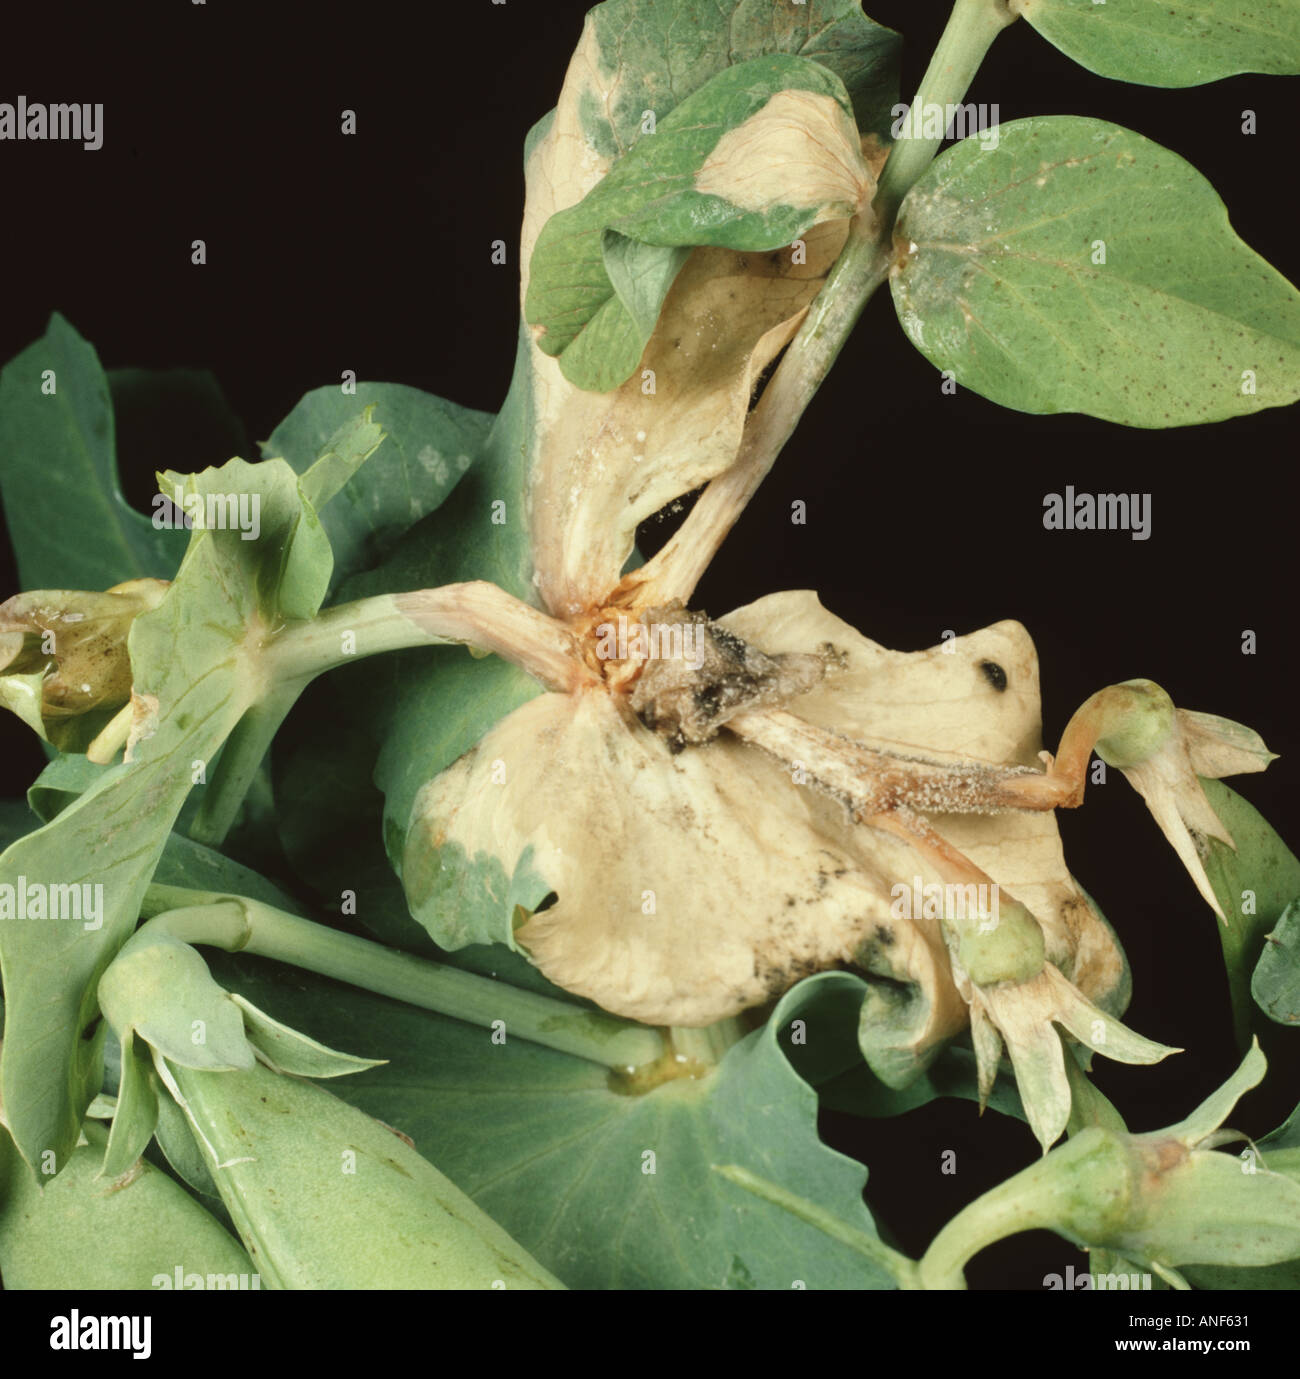 El moho gris Botrytis cinerea infección sobre hojas de guisante Pisum sativum axial con algunos micelios desarrollo Foto de stock